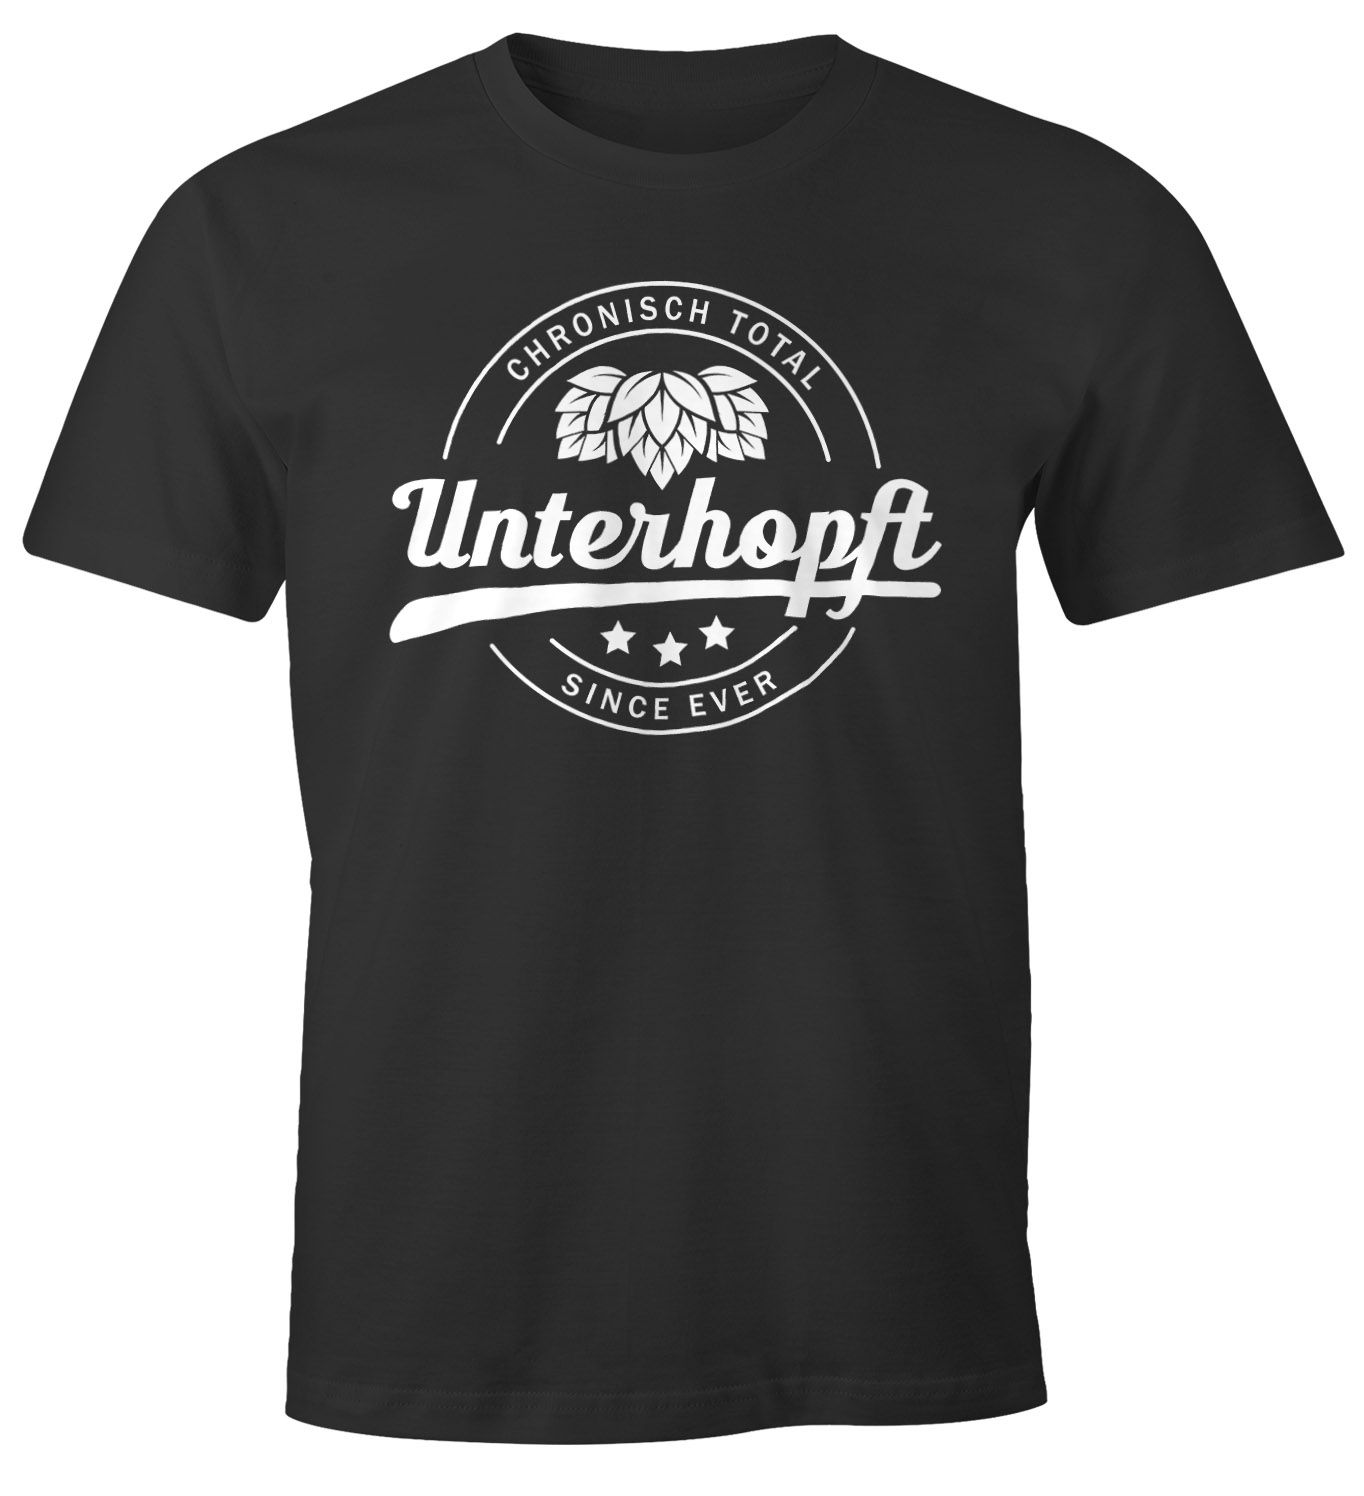 Chronisch Unterhopft Total Herren T-Shirt Since Ever Fun-Shirt Moonworks®